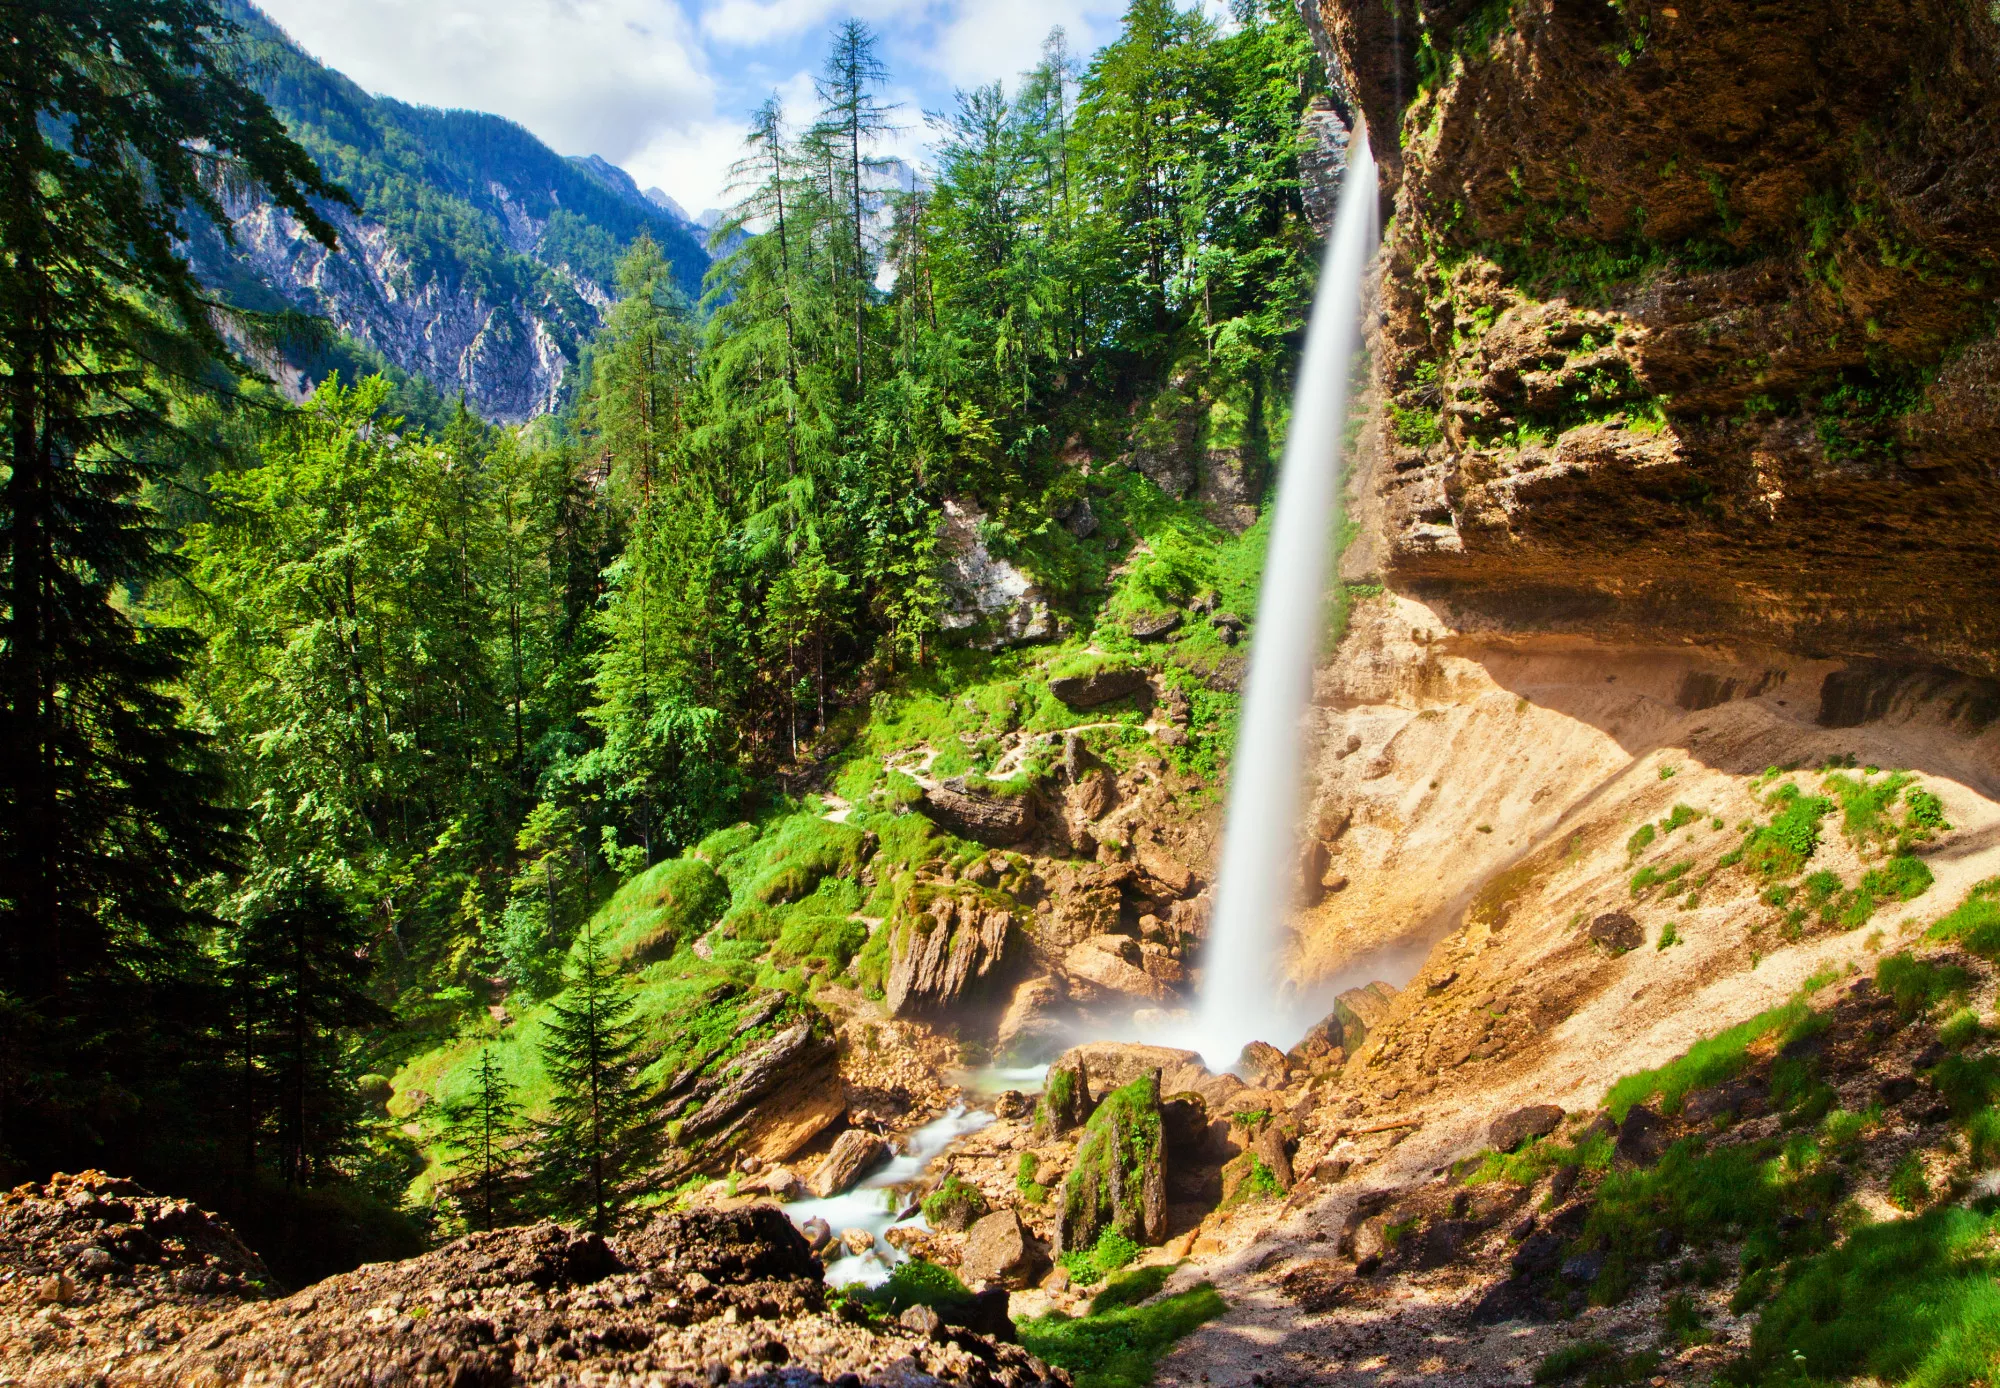 Pericnik Waterfall in Slovenia, Europe | Waterfalls - Rated 4.1